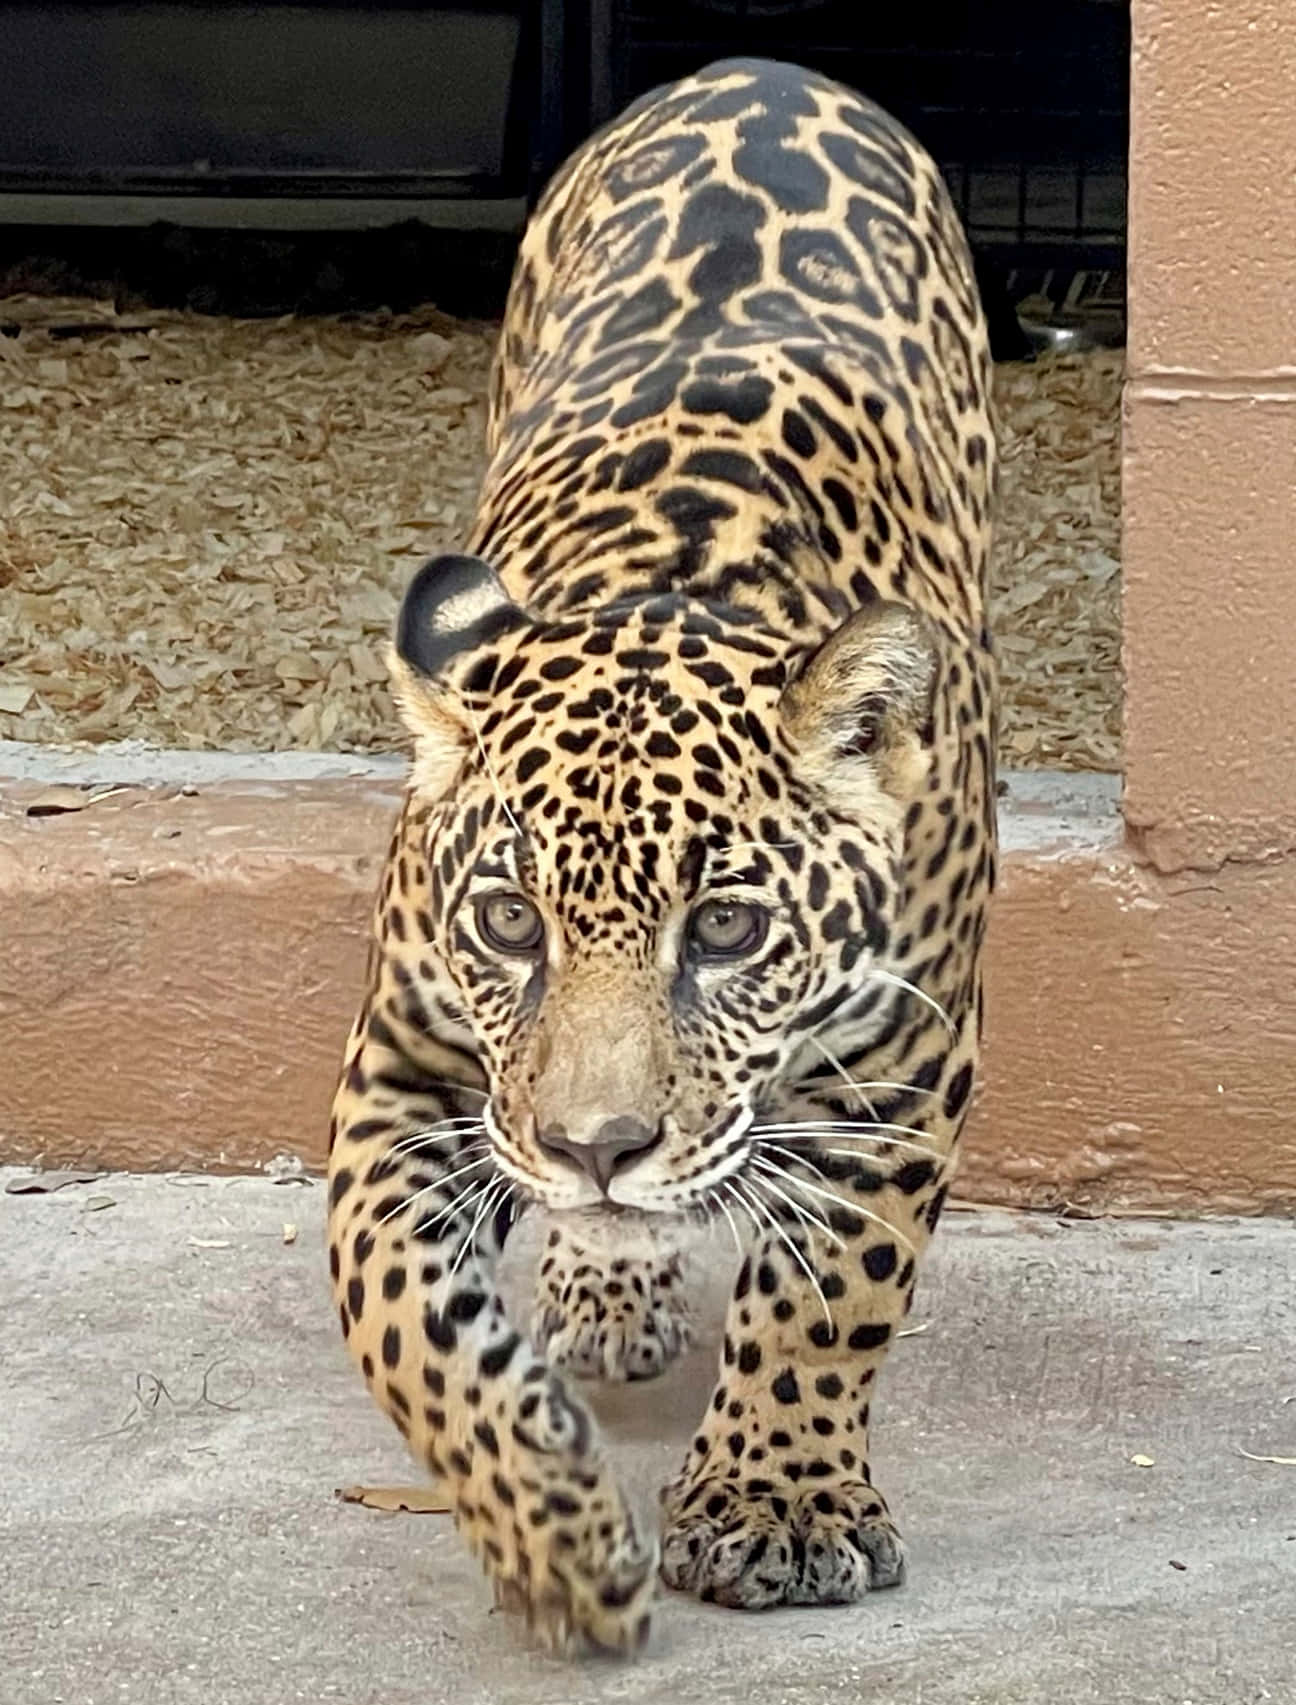 Feel the power of the Jaguar